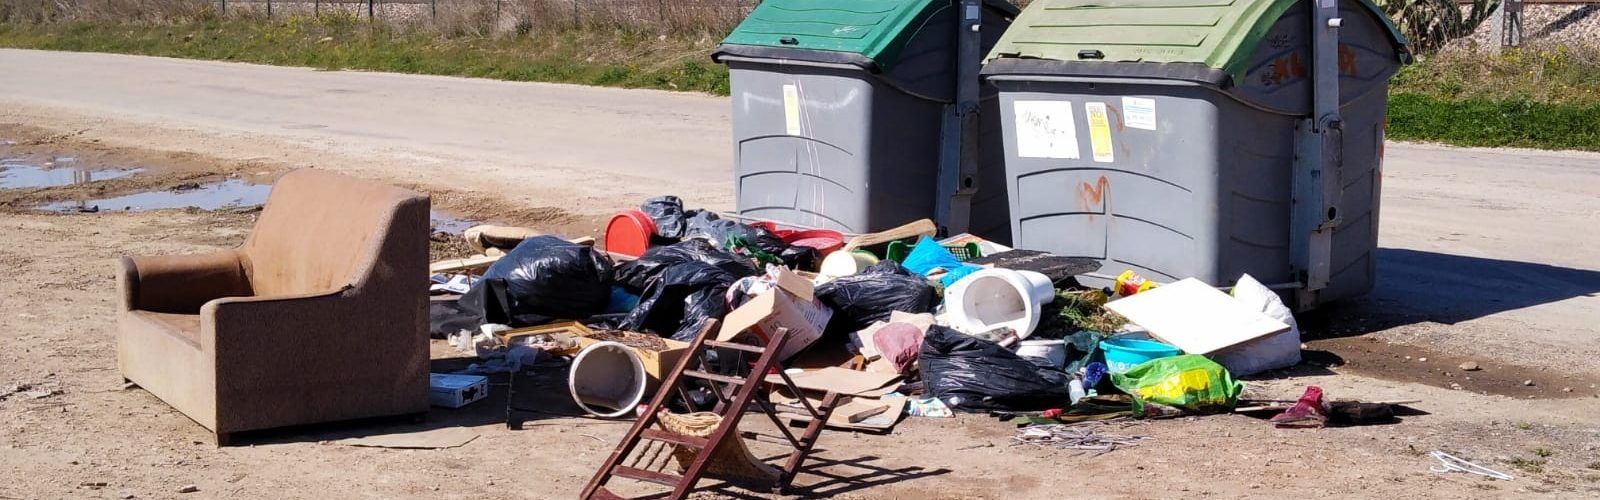 L’Ajuntament de Vinaròs treballa per a millorar el servei de recollida de residus